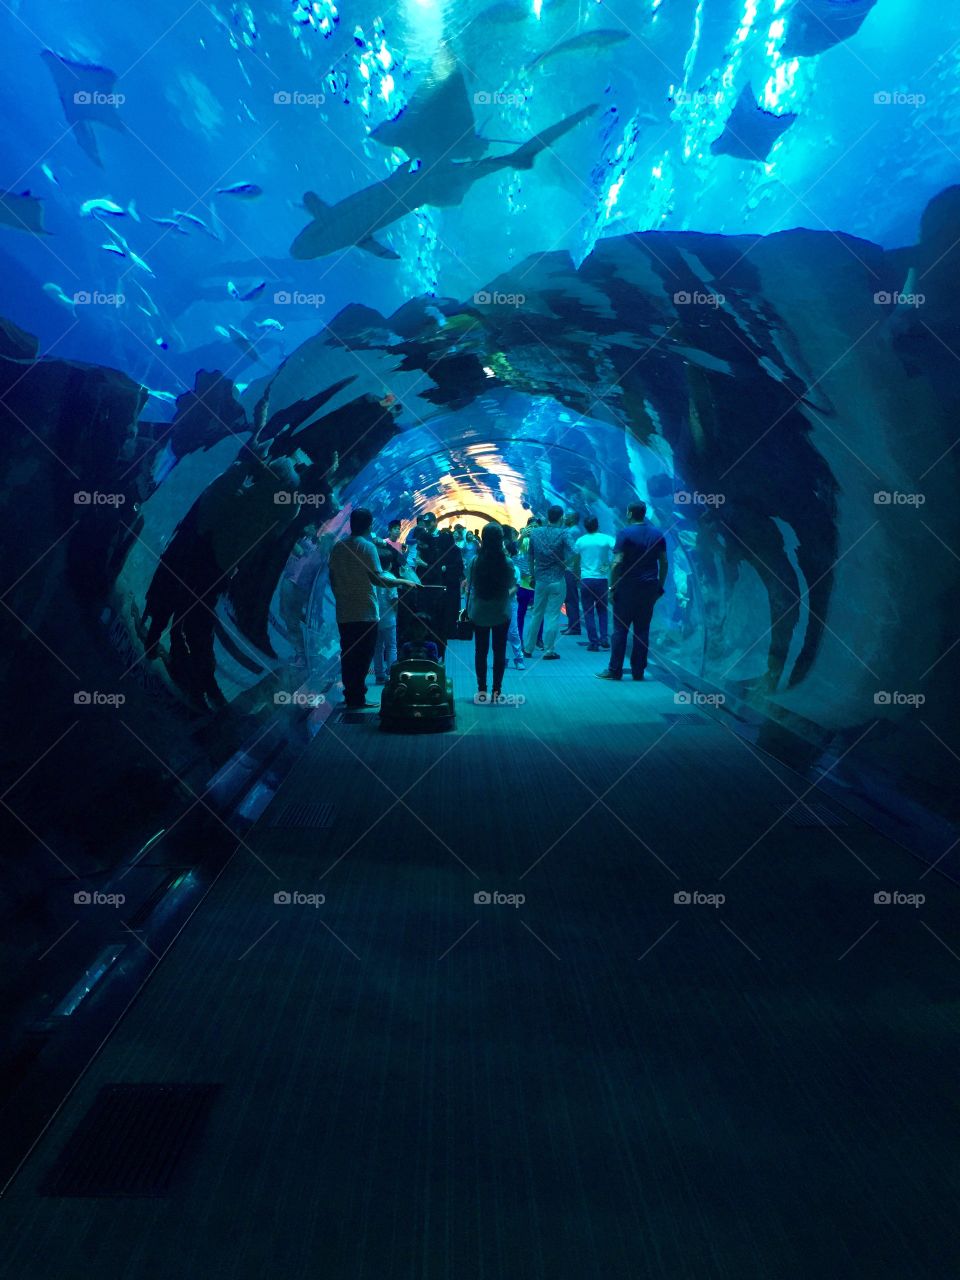 Walking through the underwater aquarium in Dubai 